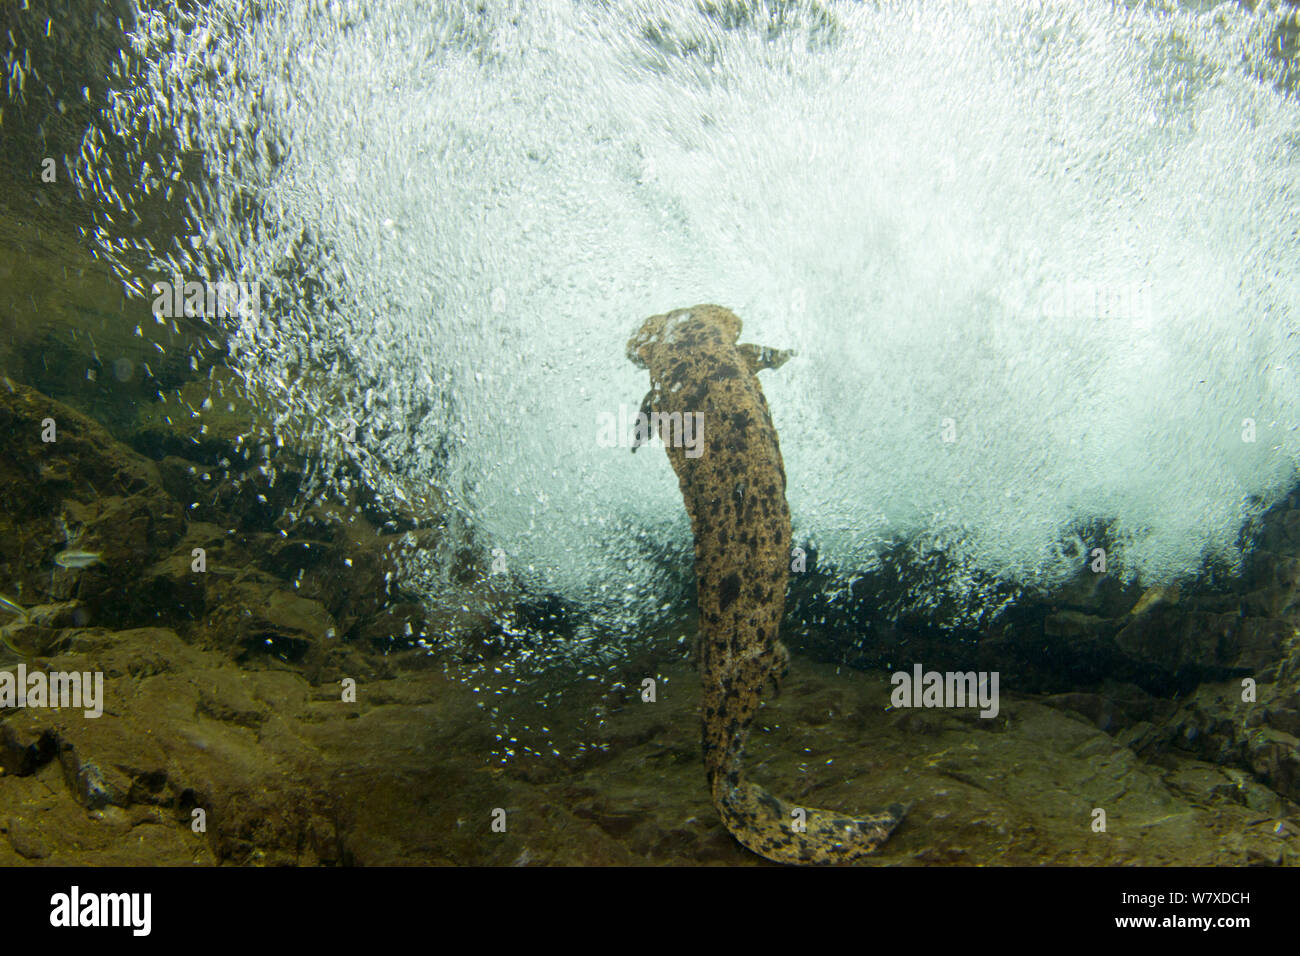 Salamandre géante du Japon (Andrias japonicus) mâle nageant dans le courant. Rivière Ichikawa, Okayama, Japon, septembre. Banque D'Images